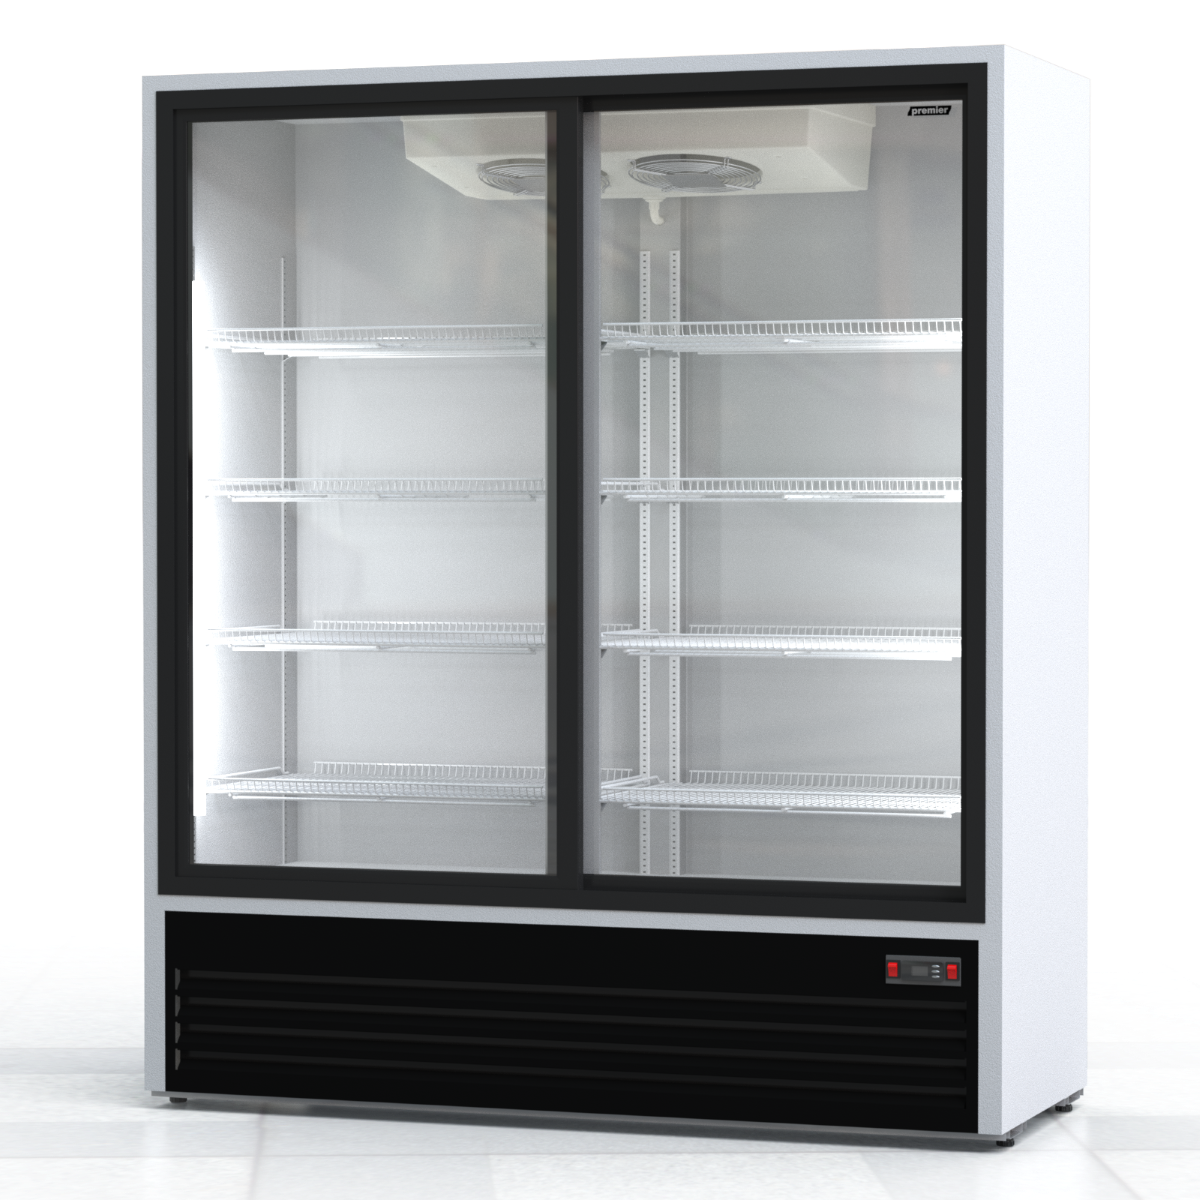 Шкаф холодильный 1 дверь. Холодильный шкаф премьер швуп1ту-1.5к. Шкаф холодильный премьер швуп1ту-1.4 к. Холодильный шкаф премьер 1швуп1ту-1,4 к (в, +1…+10). Шкаф холодильный Premier швуп1ту.